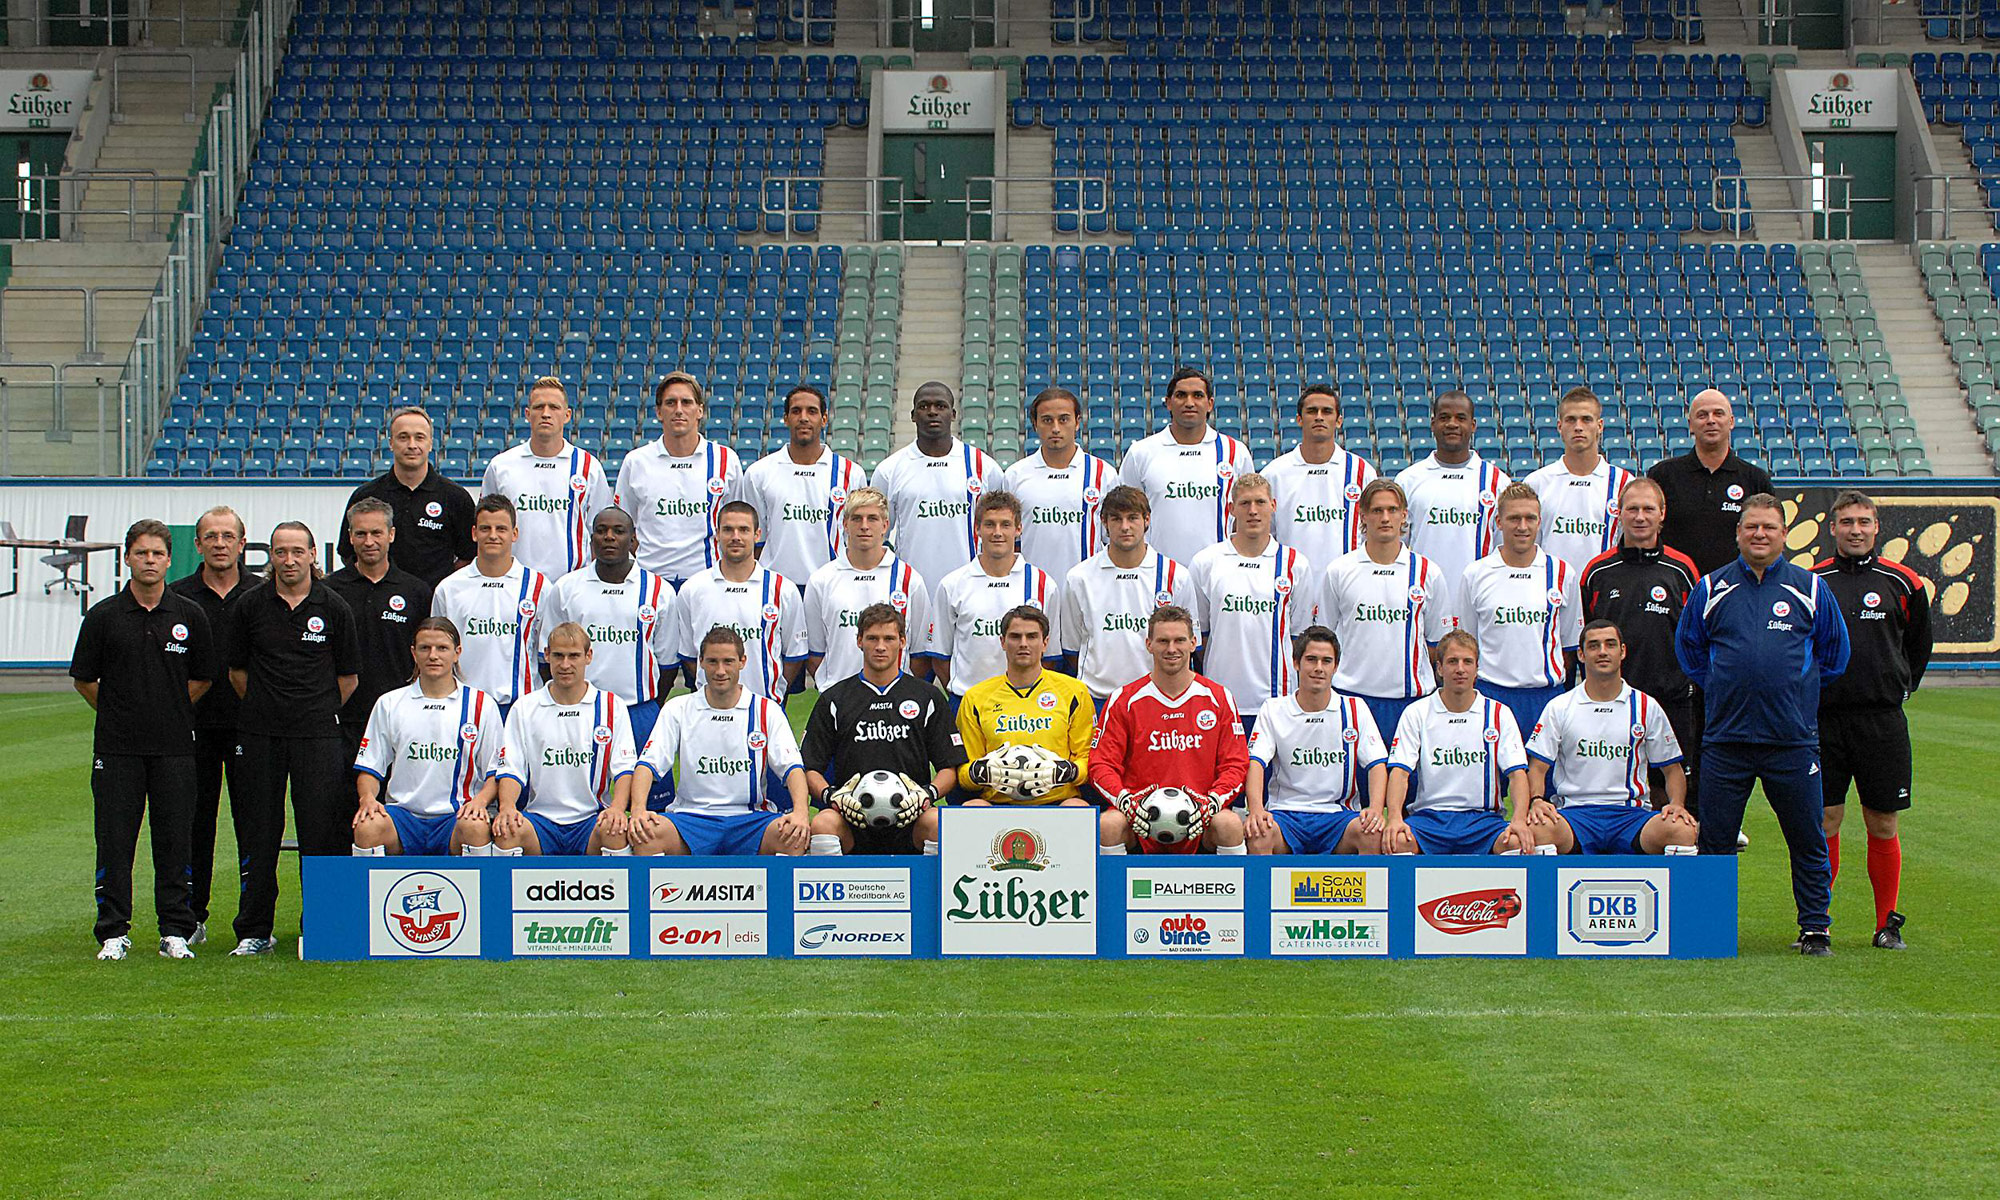 Mannschaftsfoto des FC Hansa Rostock 2008/2009 mit Sponsor Lübzer